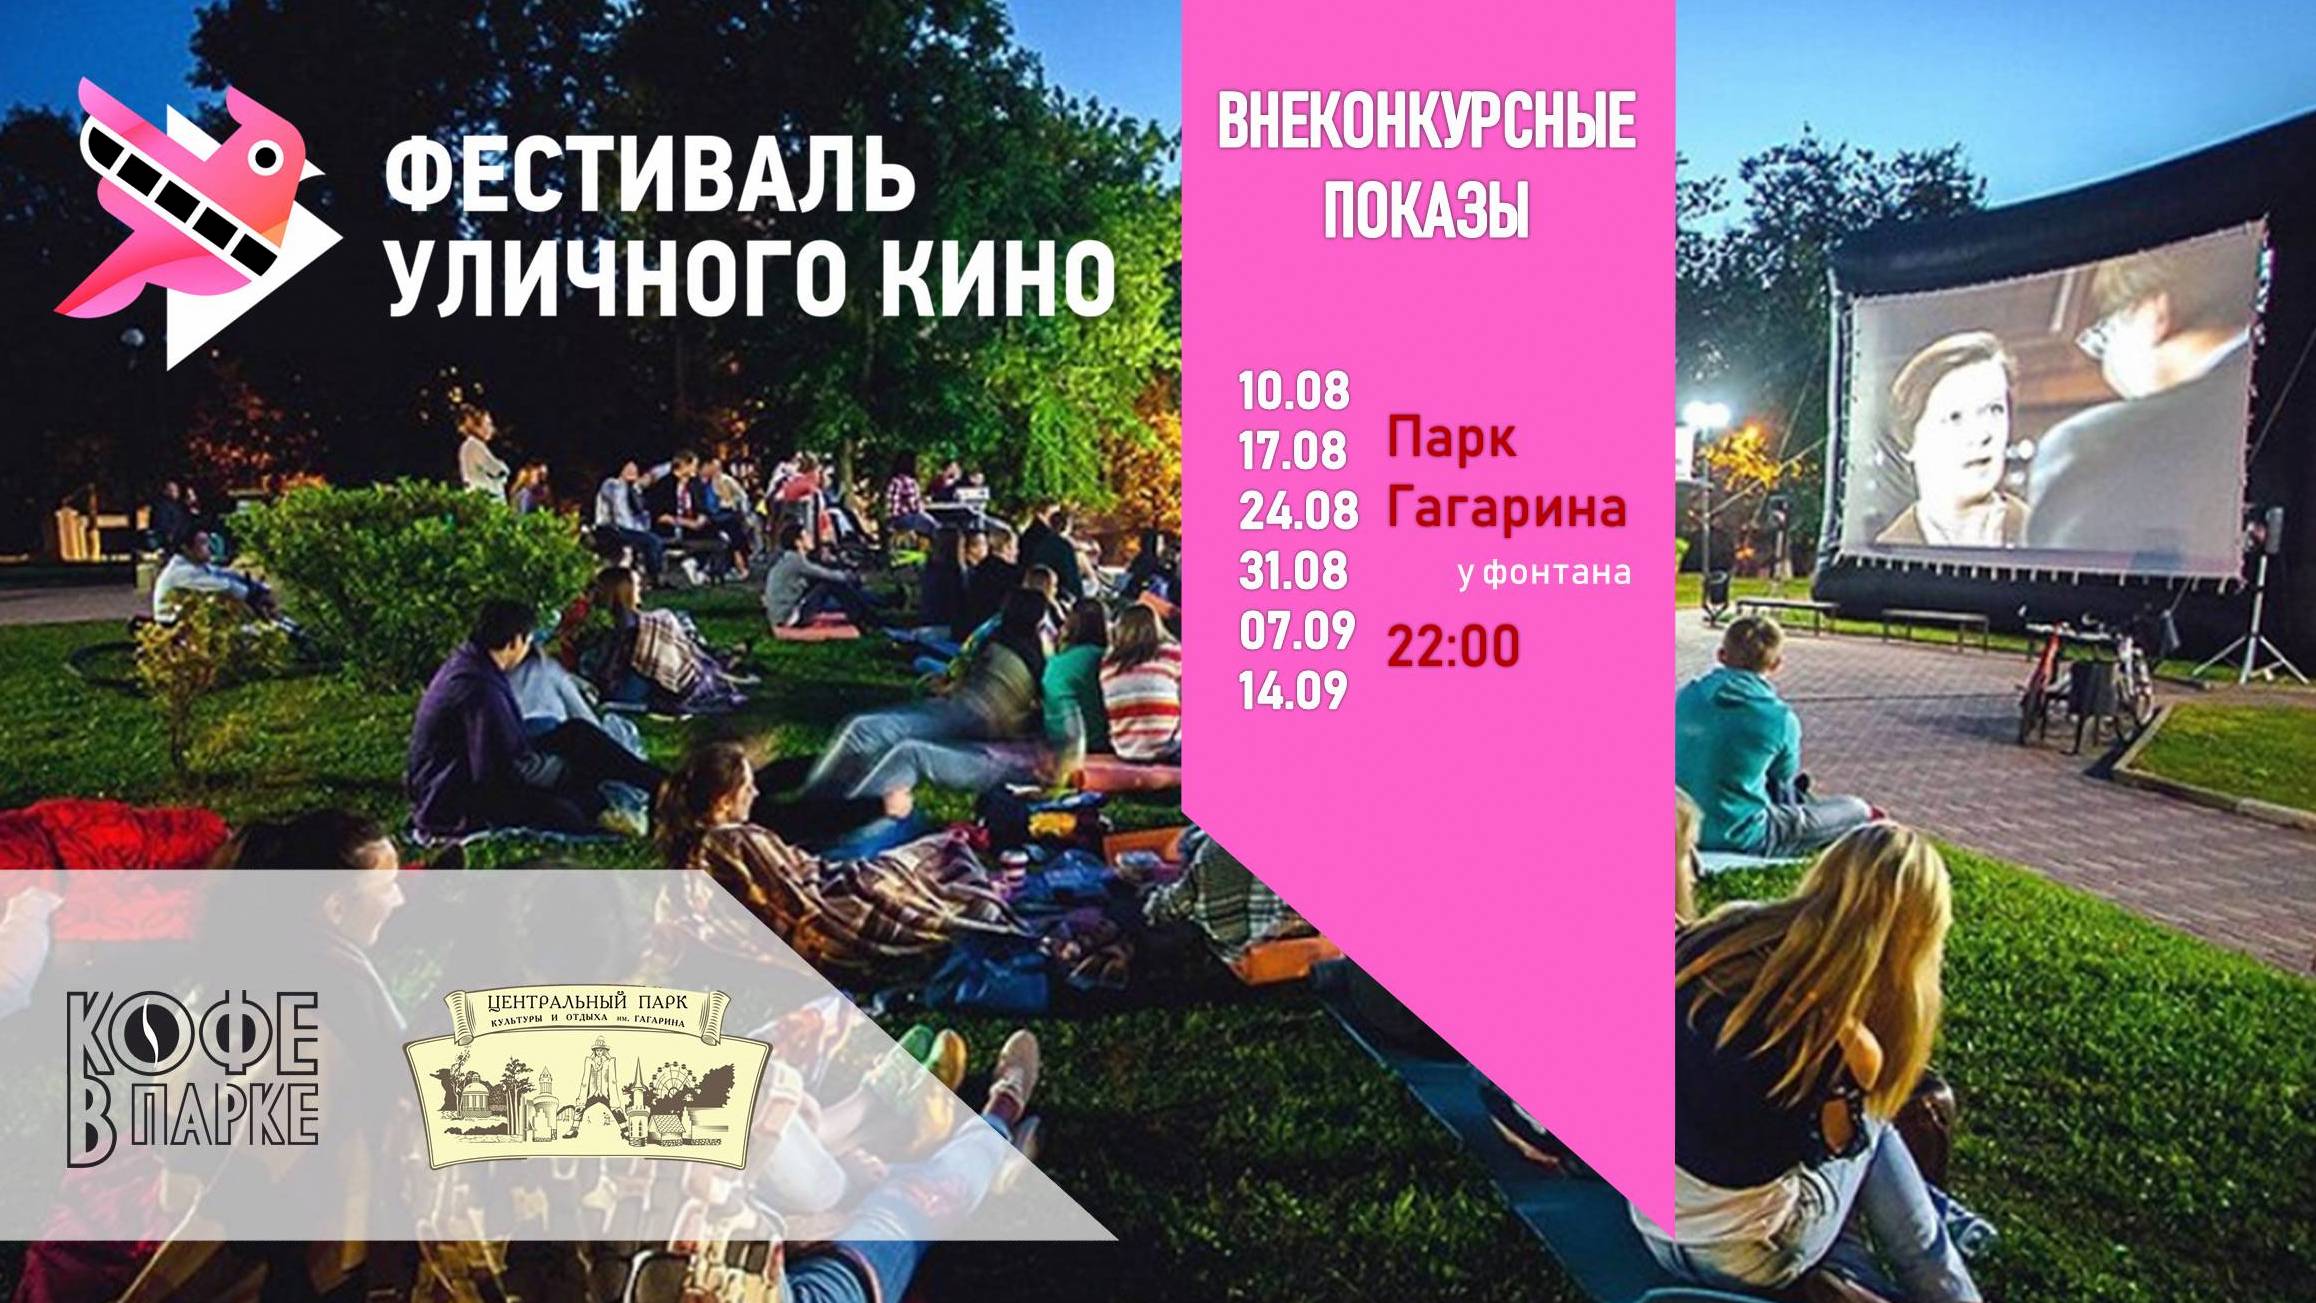 Конкурсный показ Всемирного фестиваля уличного кино пройдет в Томске осенью